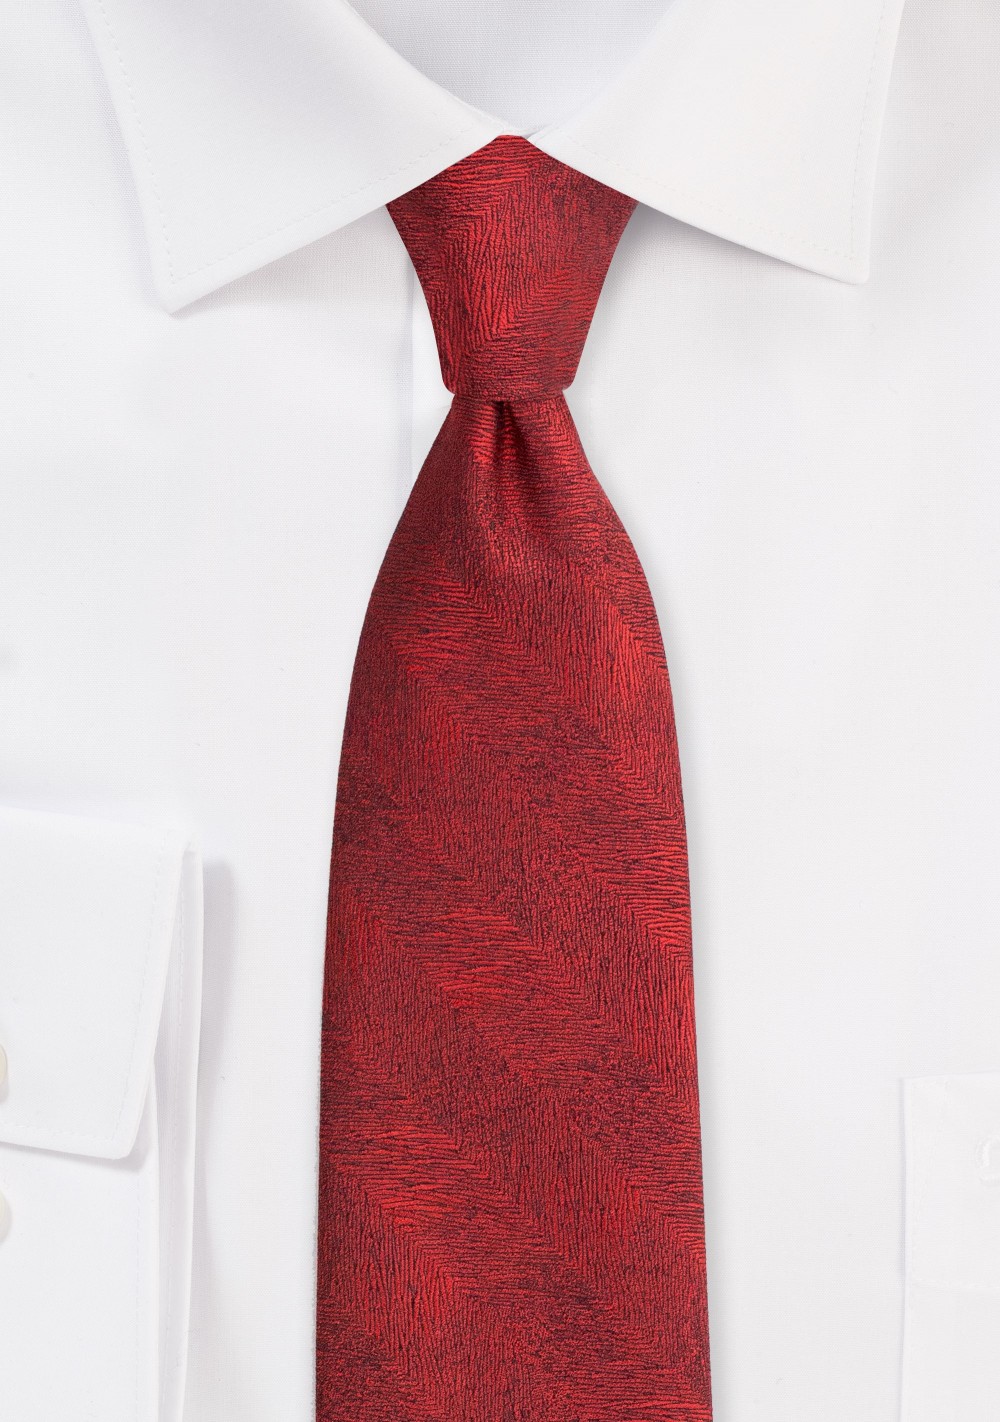 Wood Grain Textured Tie in Apple Red